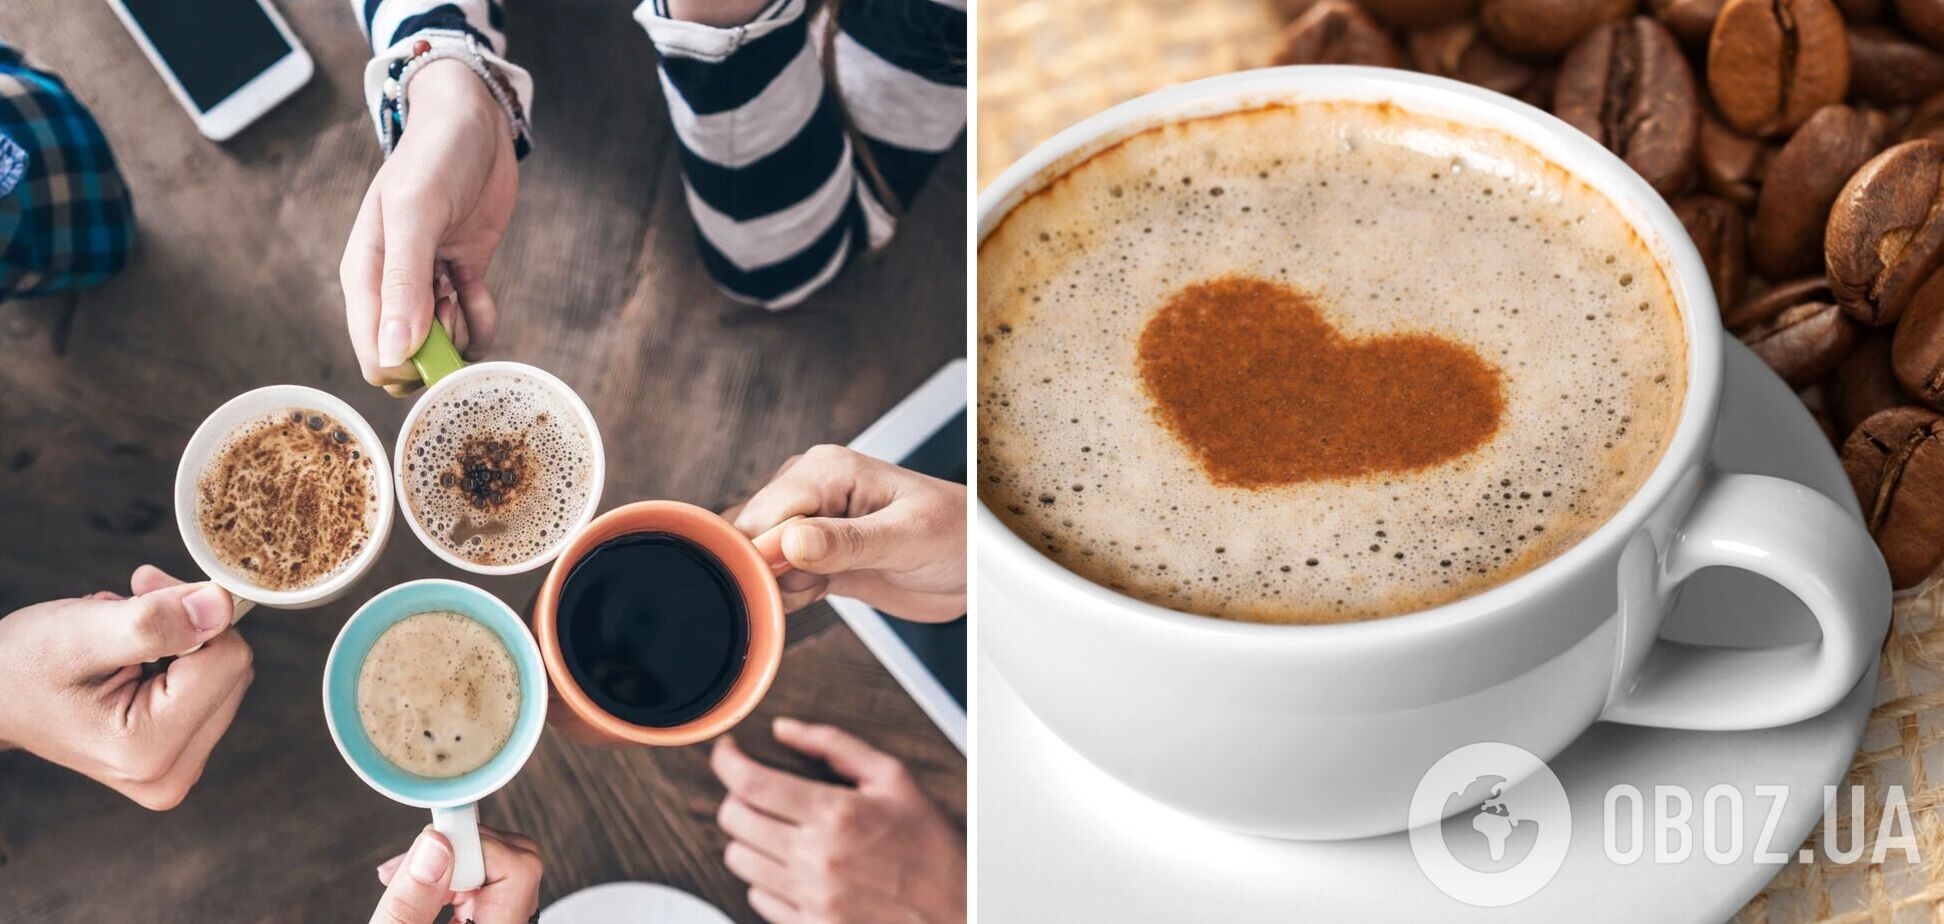 Не только ароматный и бодрящий: топ-8 преимуществ употребления кофе для здоровья